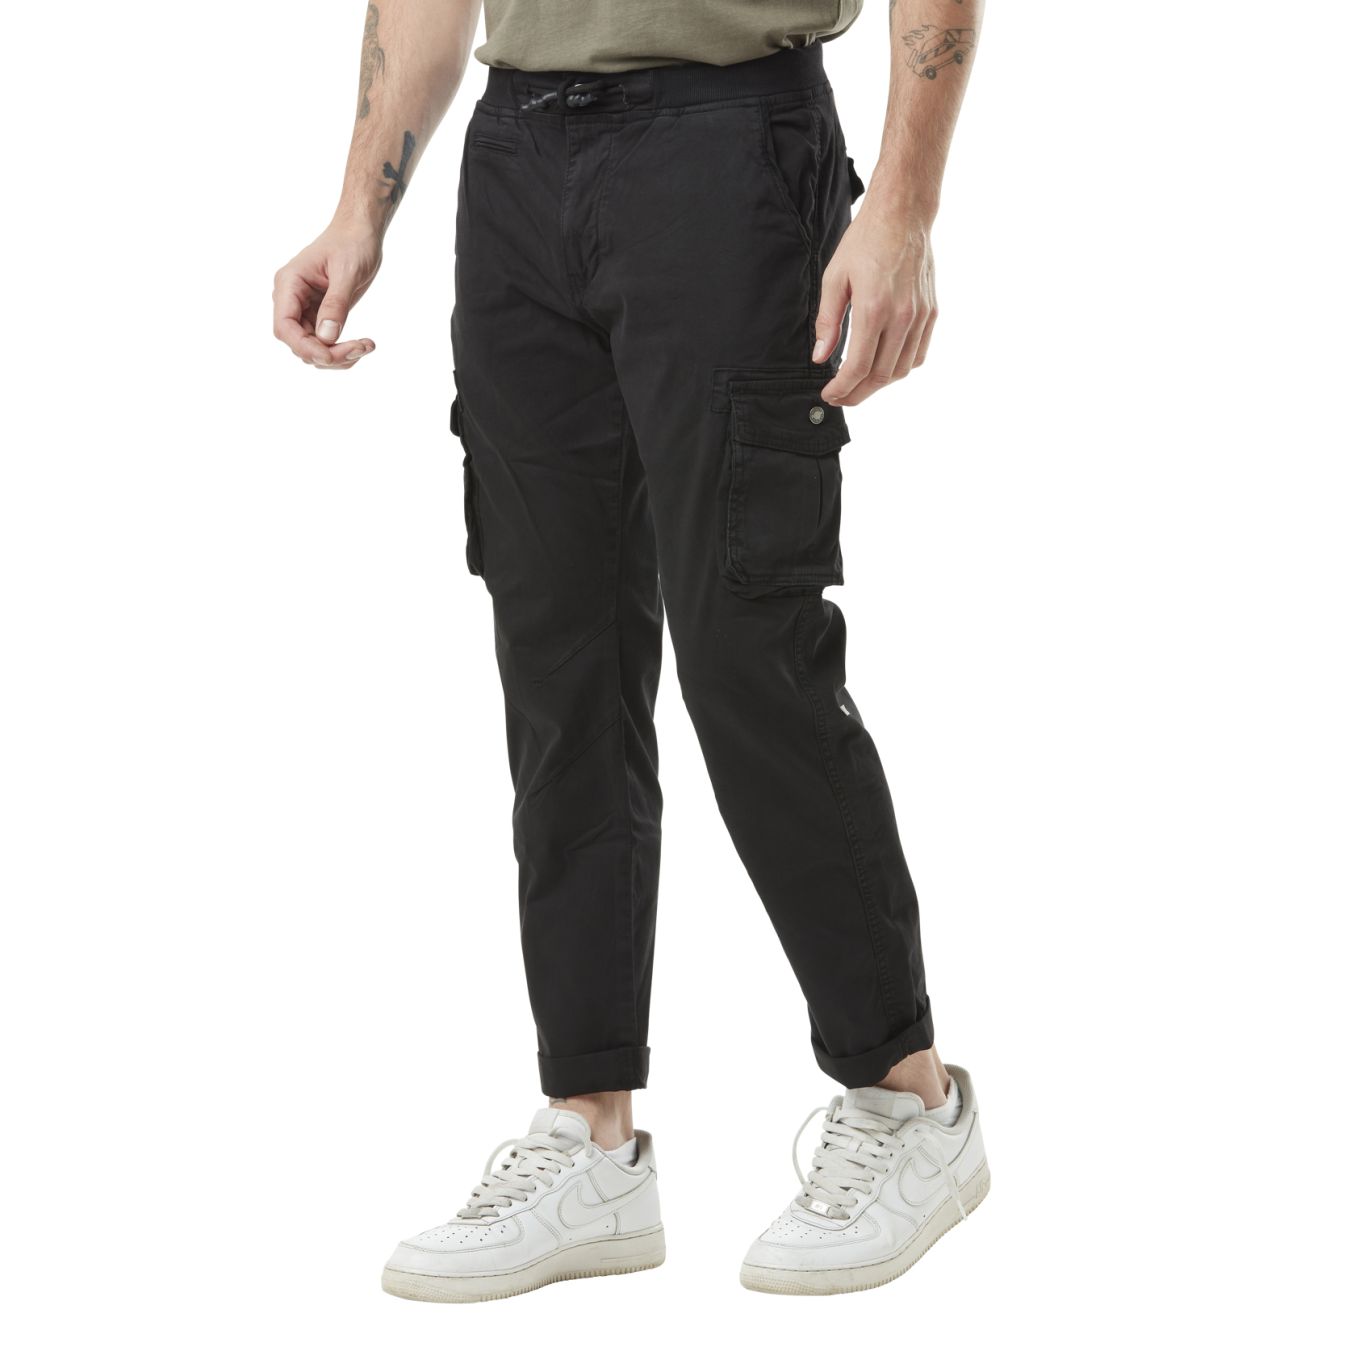 Pantalon cargo homme noir poches laterales avec écusson brodé en